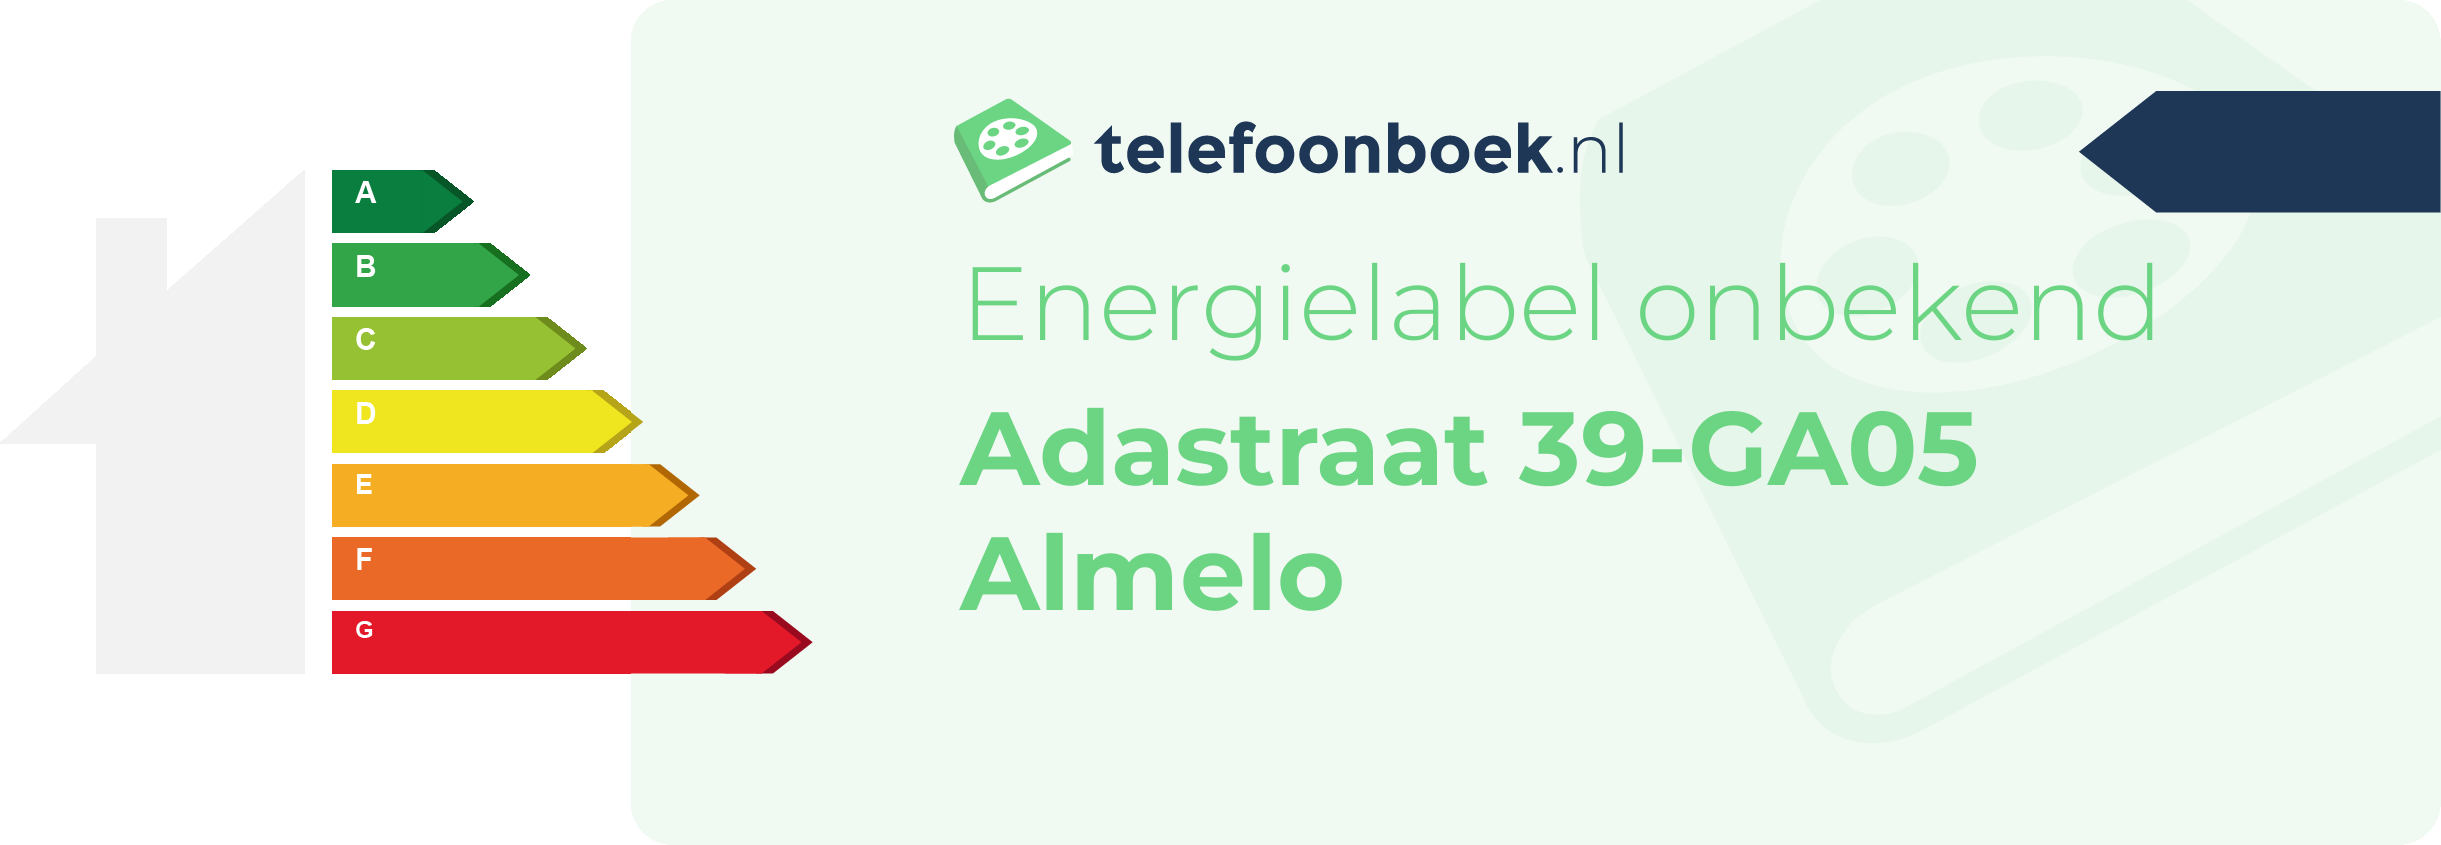 Energielabel Adastraat 39-GA05 Almelo